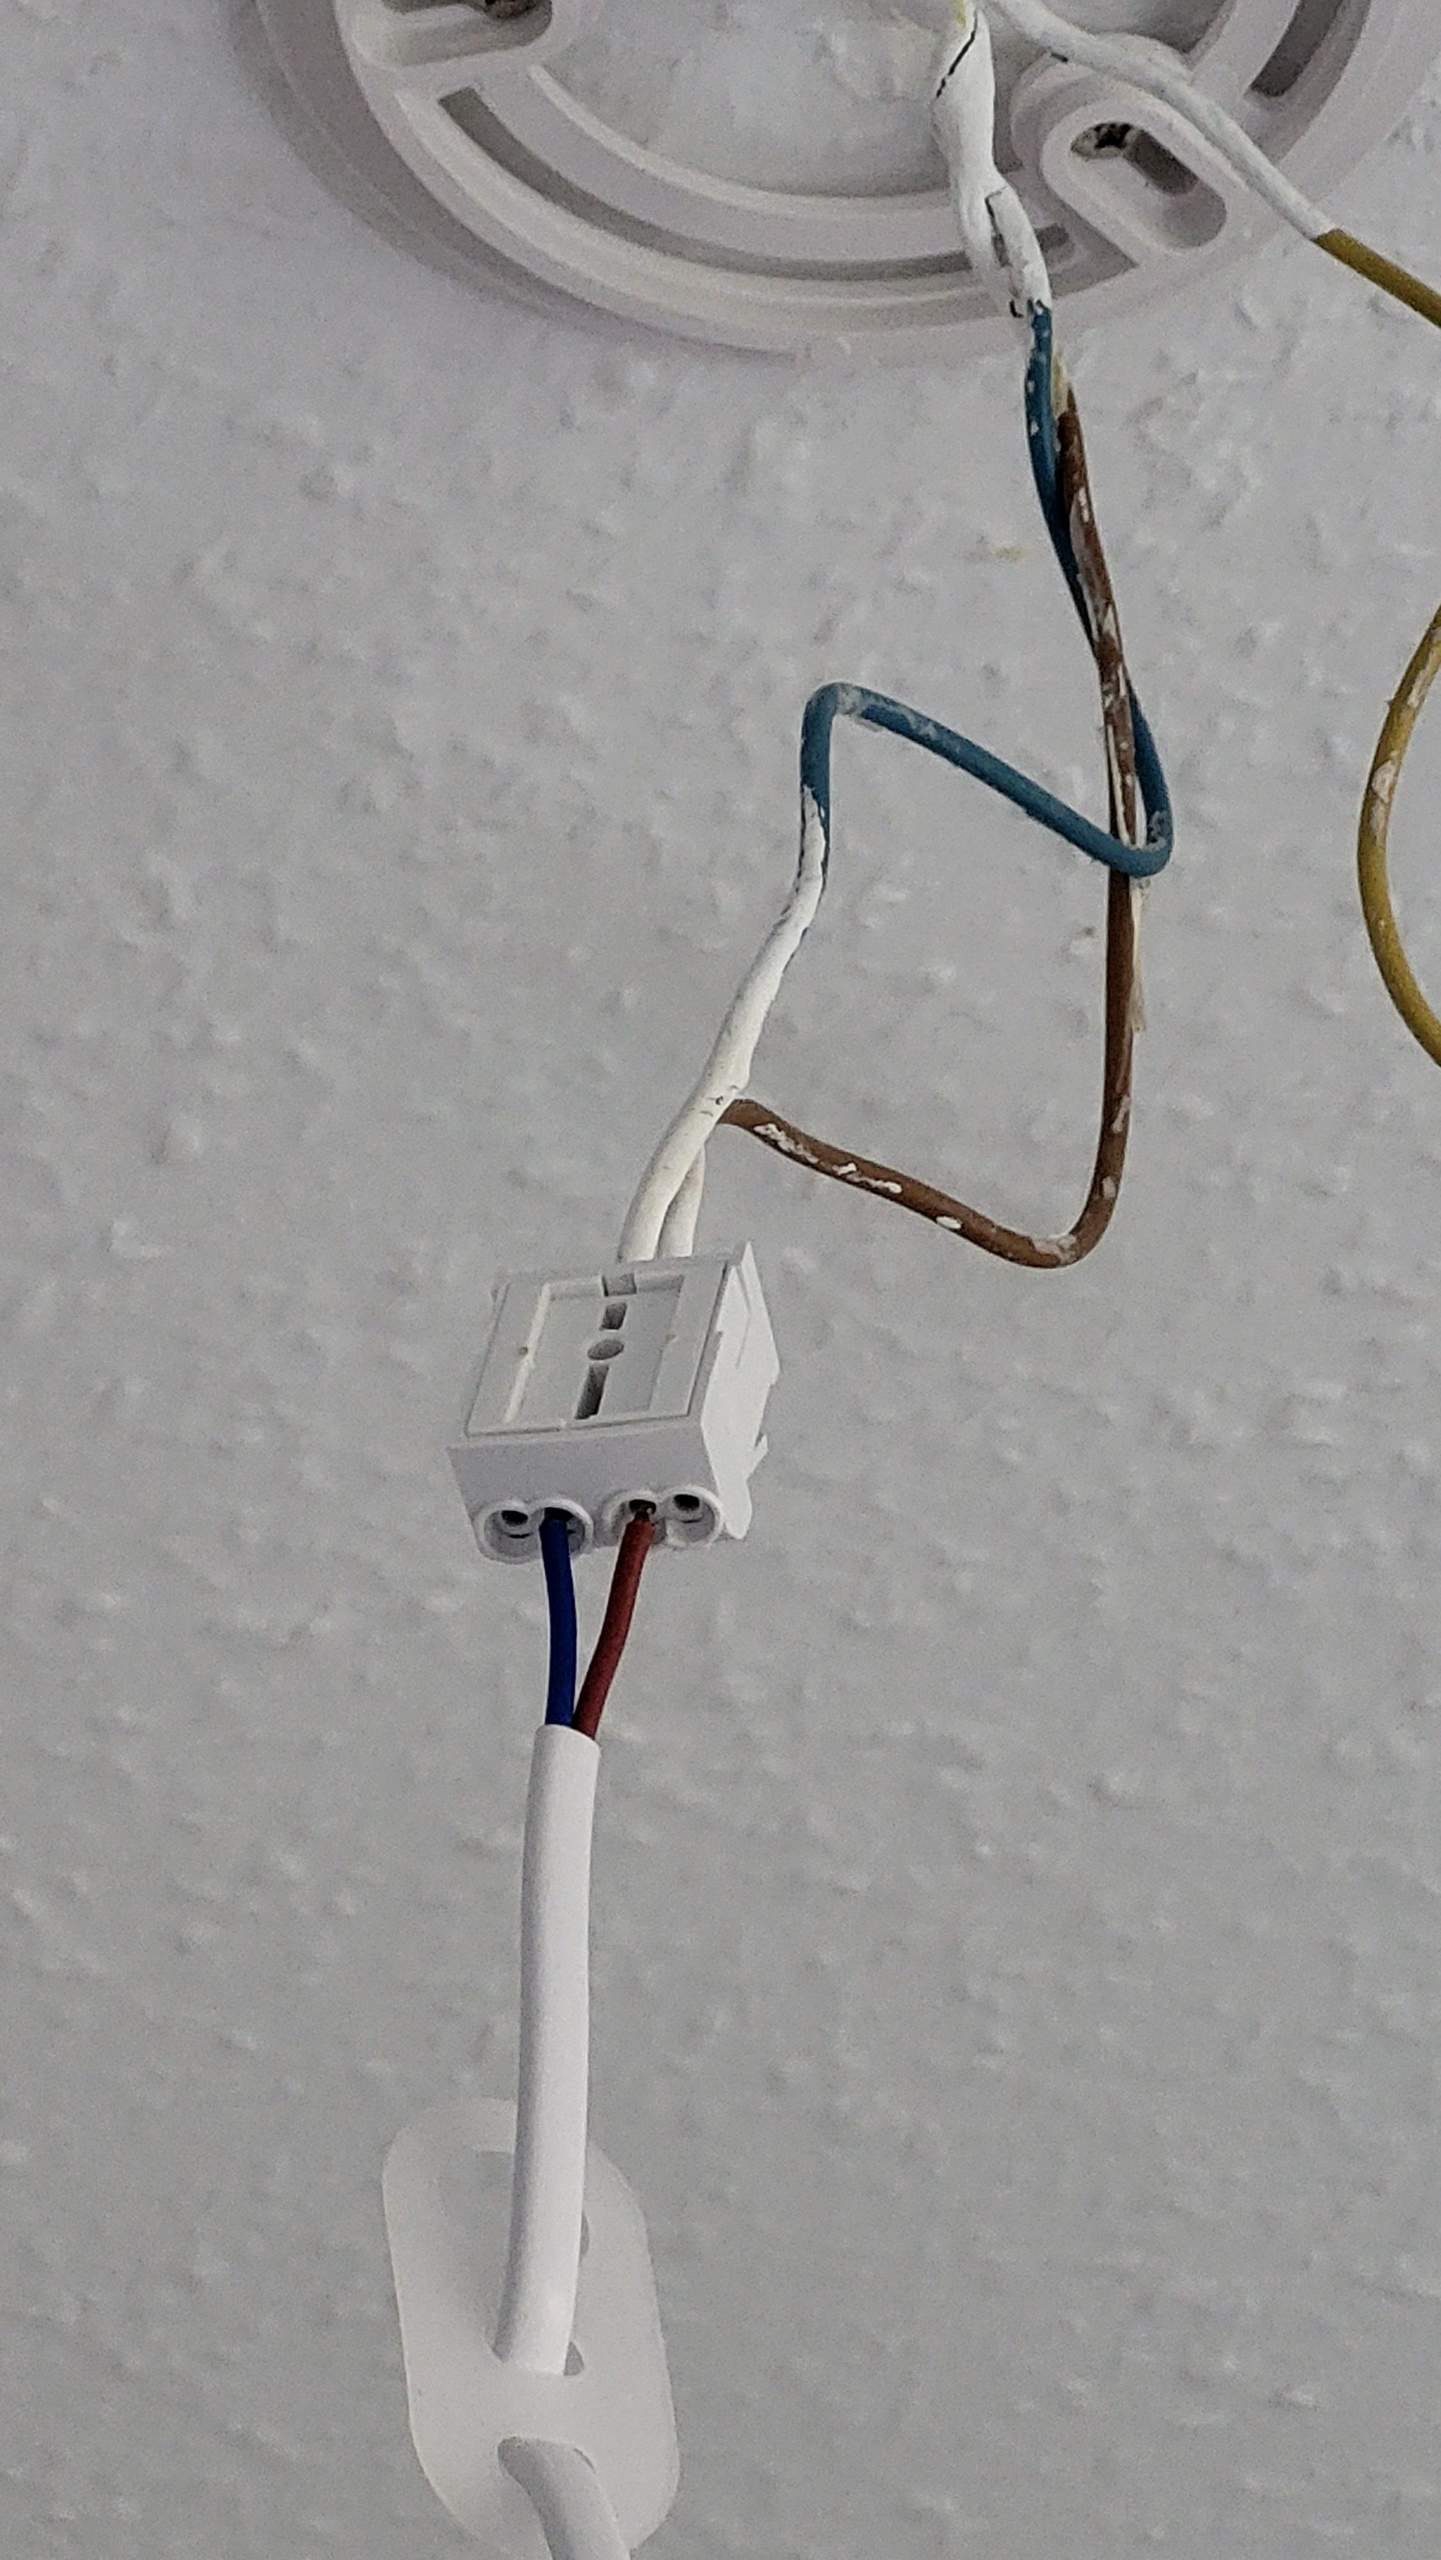 Wie entferne ich die klemme vom kabel? (Lüsterklemme)